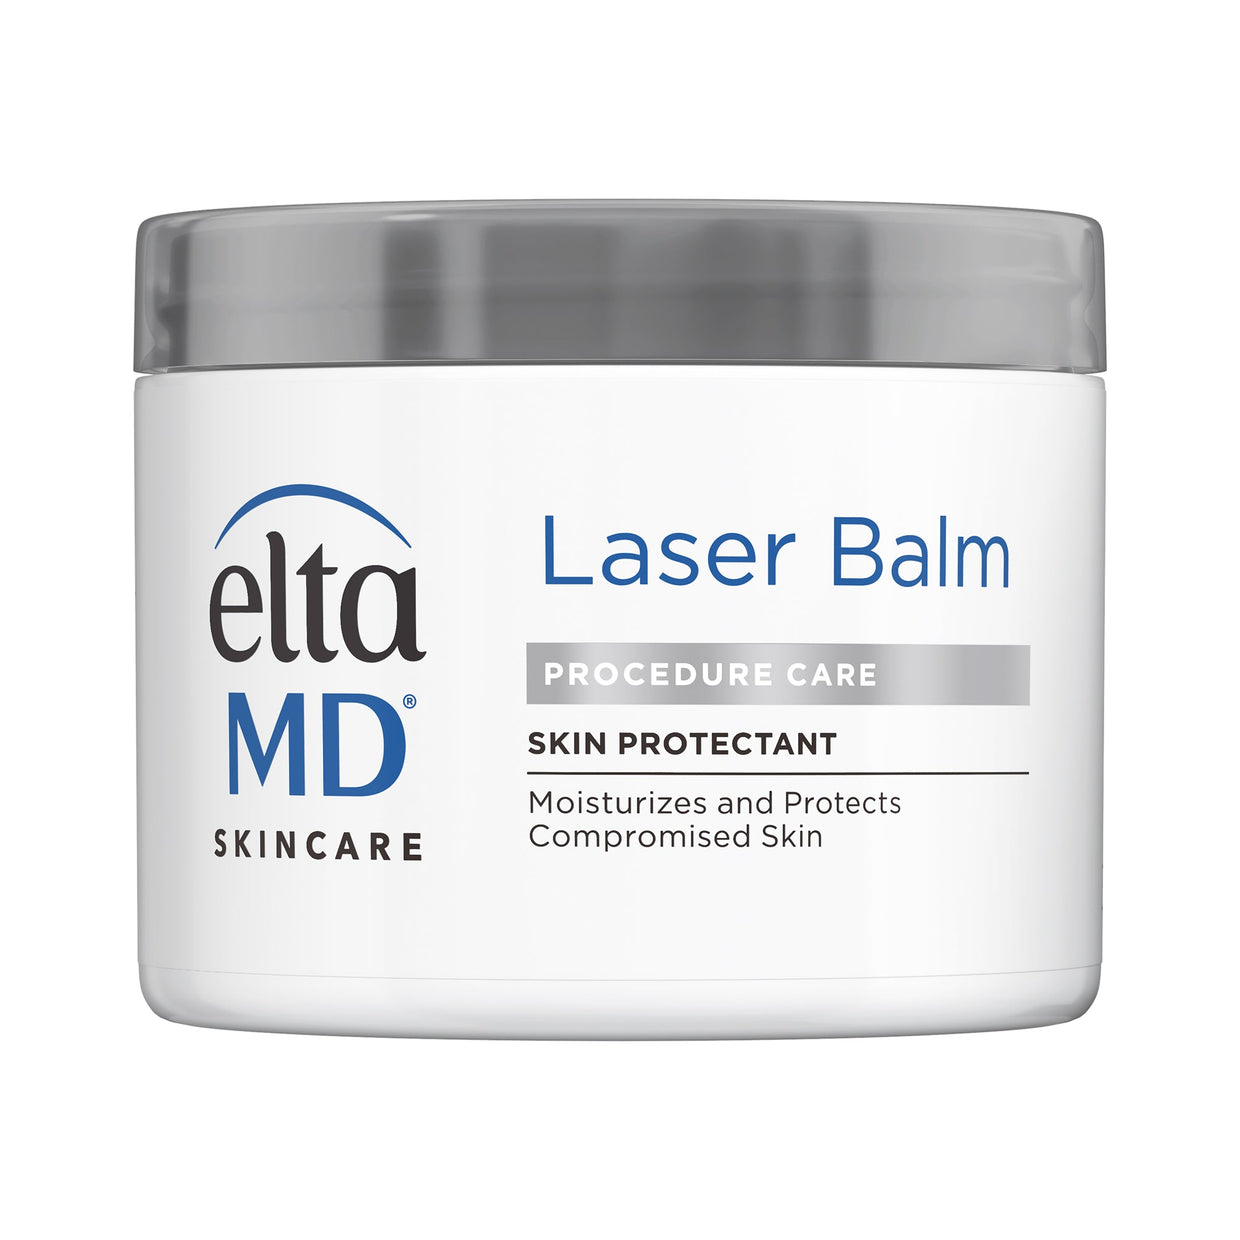 EltaMD Laser Balm Post-Procedure